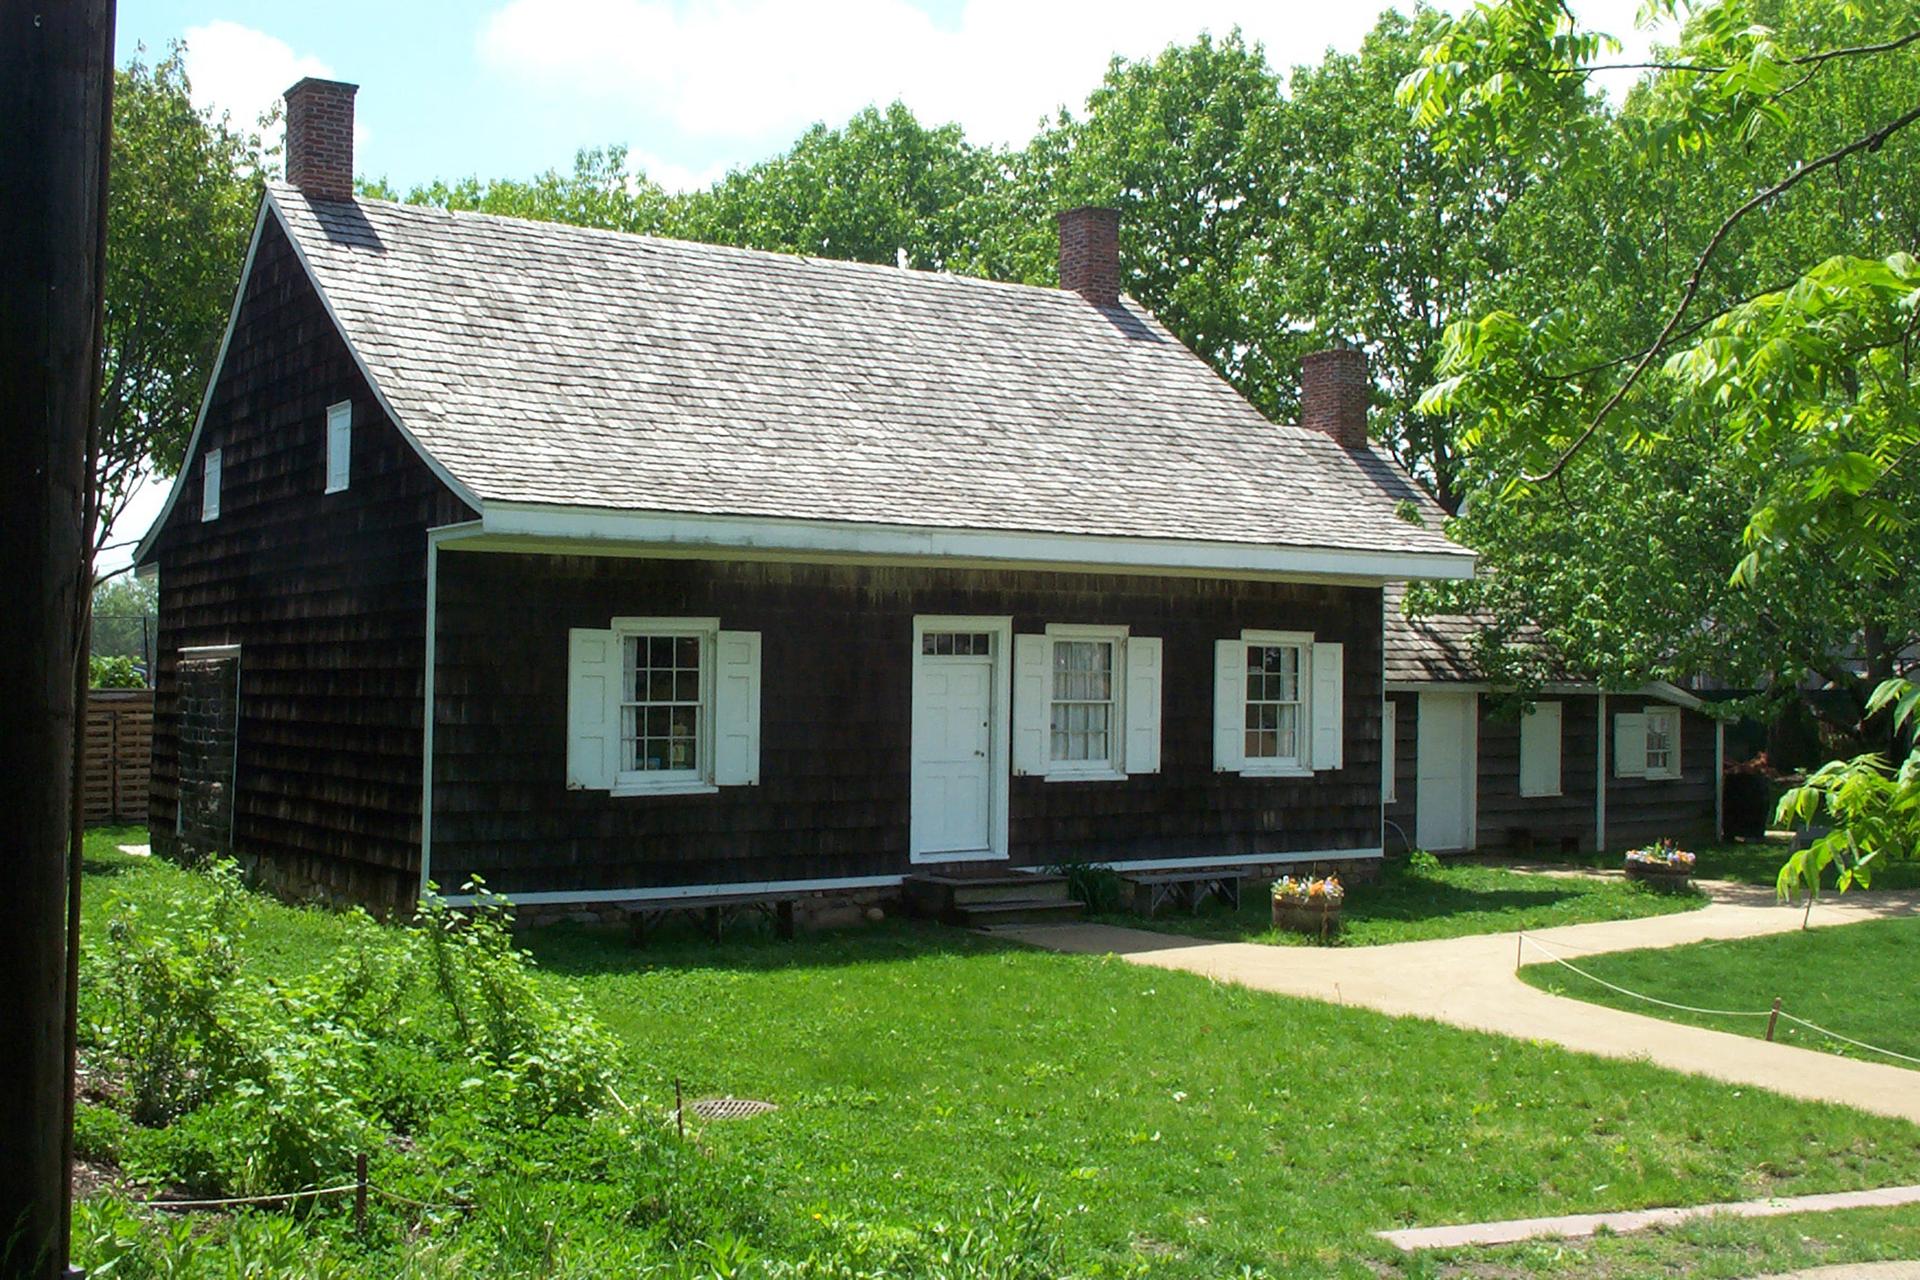 Wyckoff Farmhouse Museum